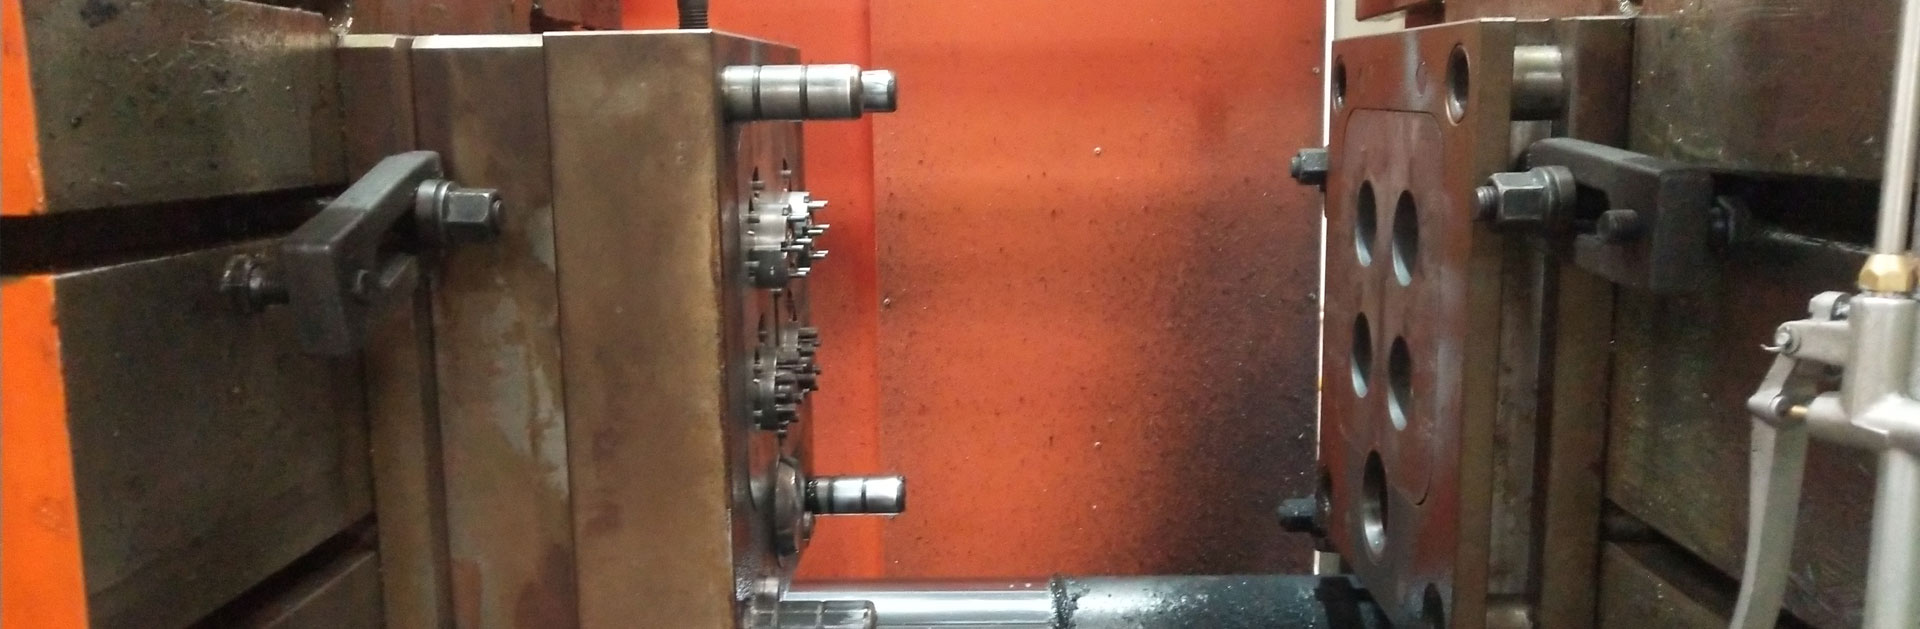 Outillage de moulage sous pression - Fabrication de moules de moulage sous pression - Conception pour la fabrication